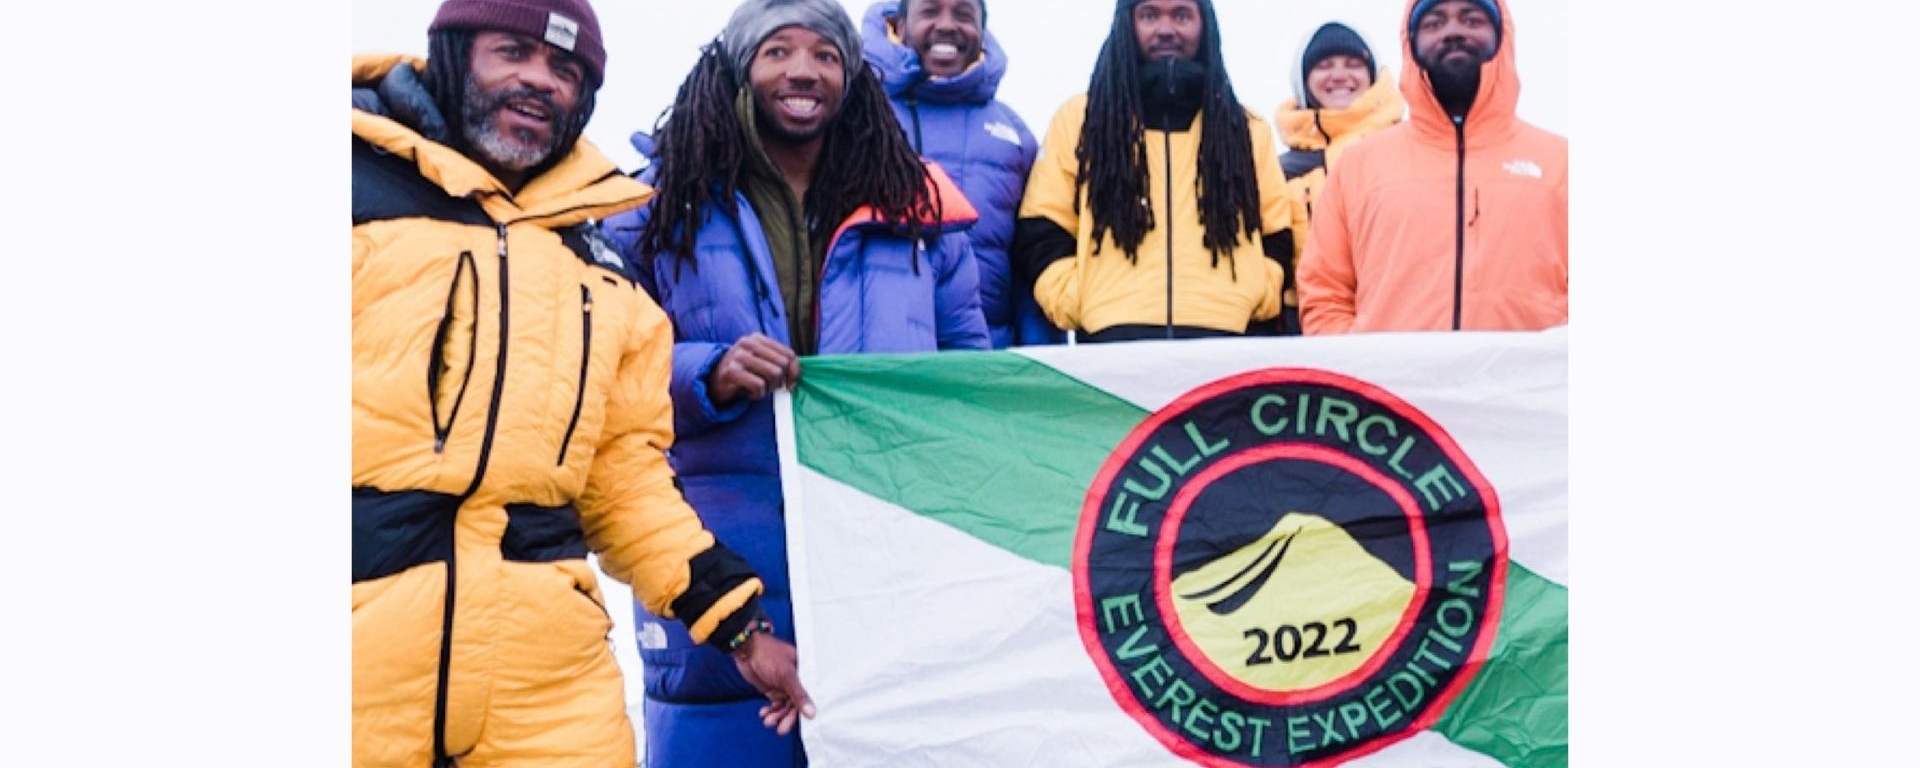 Wyprawa Full Circle na szczycie Mount Everest